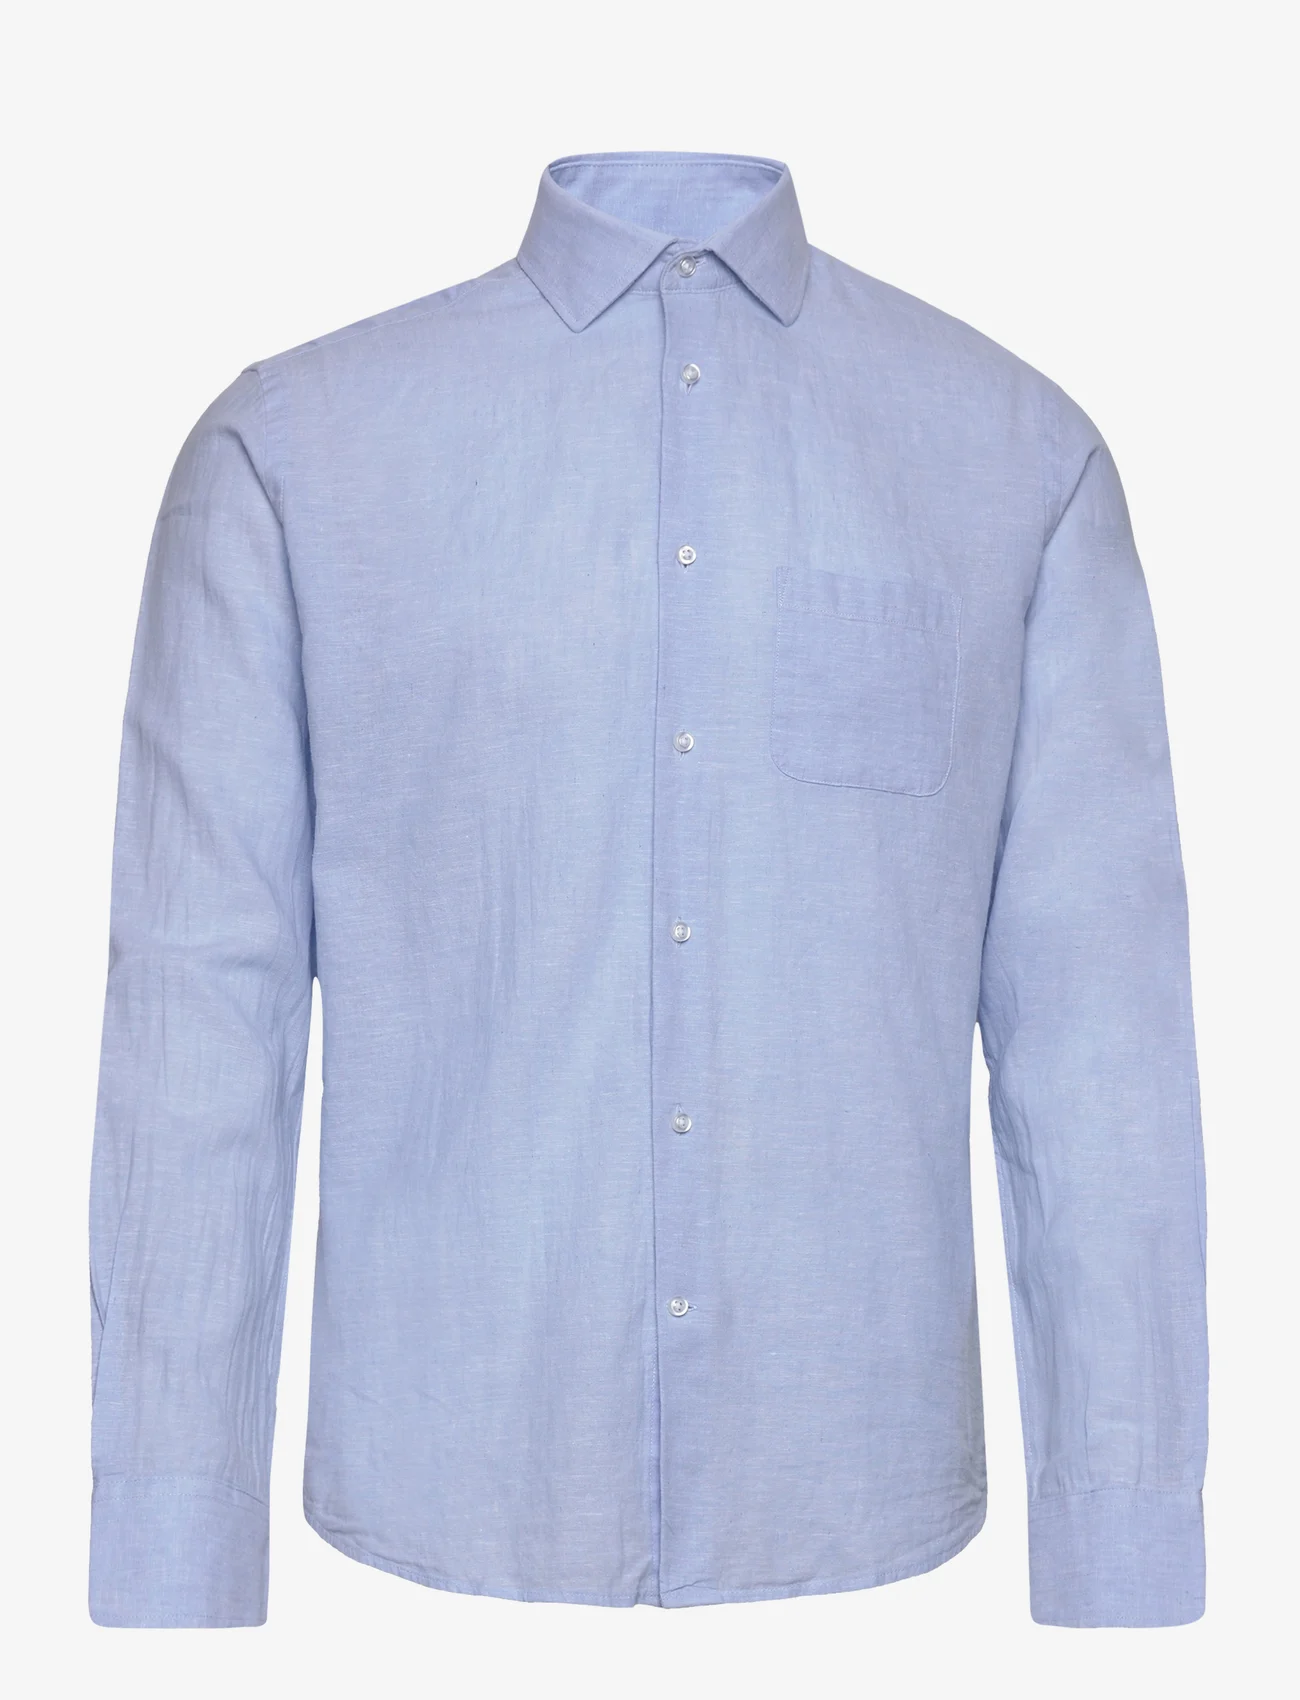 Bruun & Stengade - BS Ferrol Casual Slim Fit Shirt - leinenhemden - light blue - 0